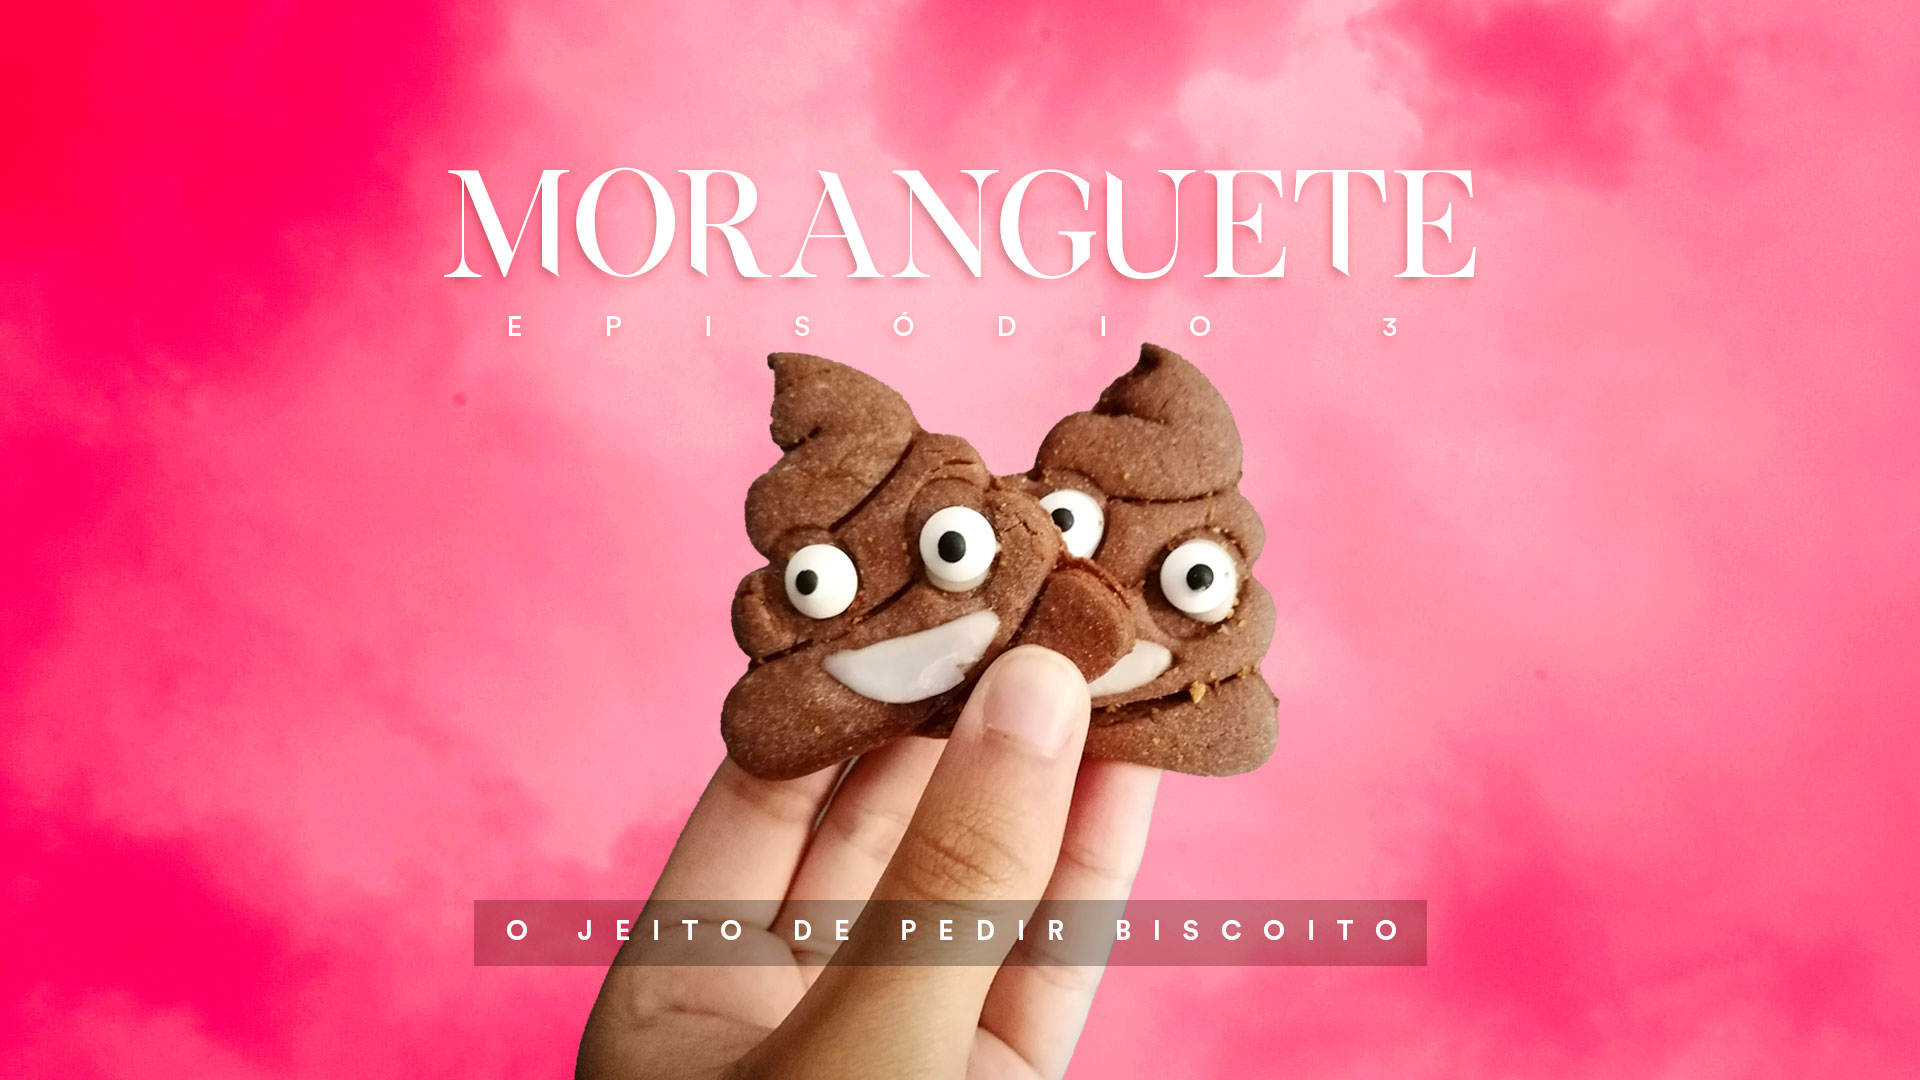 Moranguete – O jeito de pedir biscoito (Episódio 03)